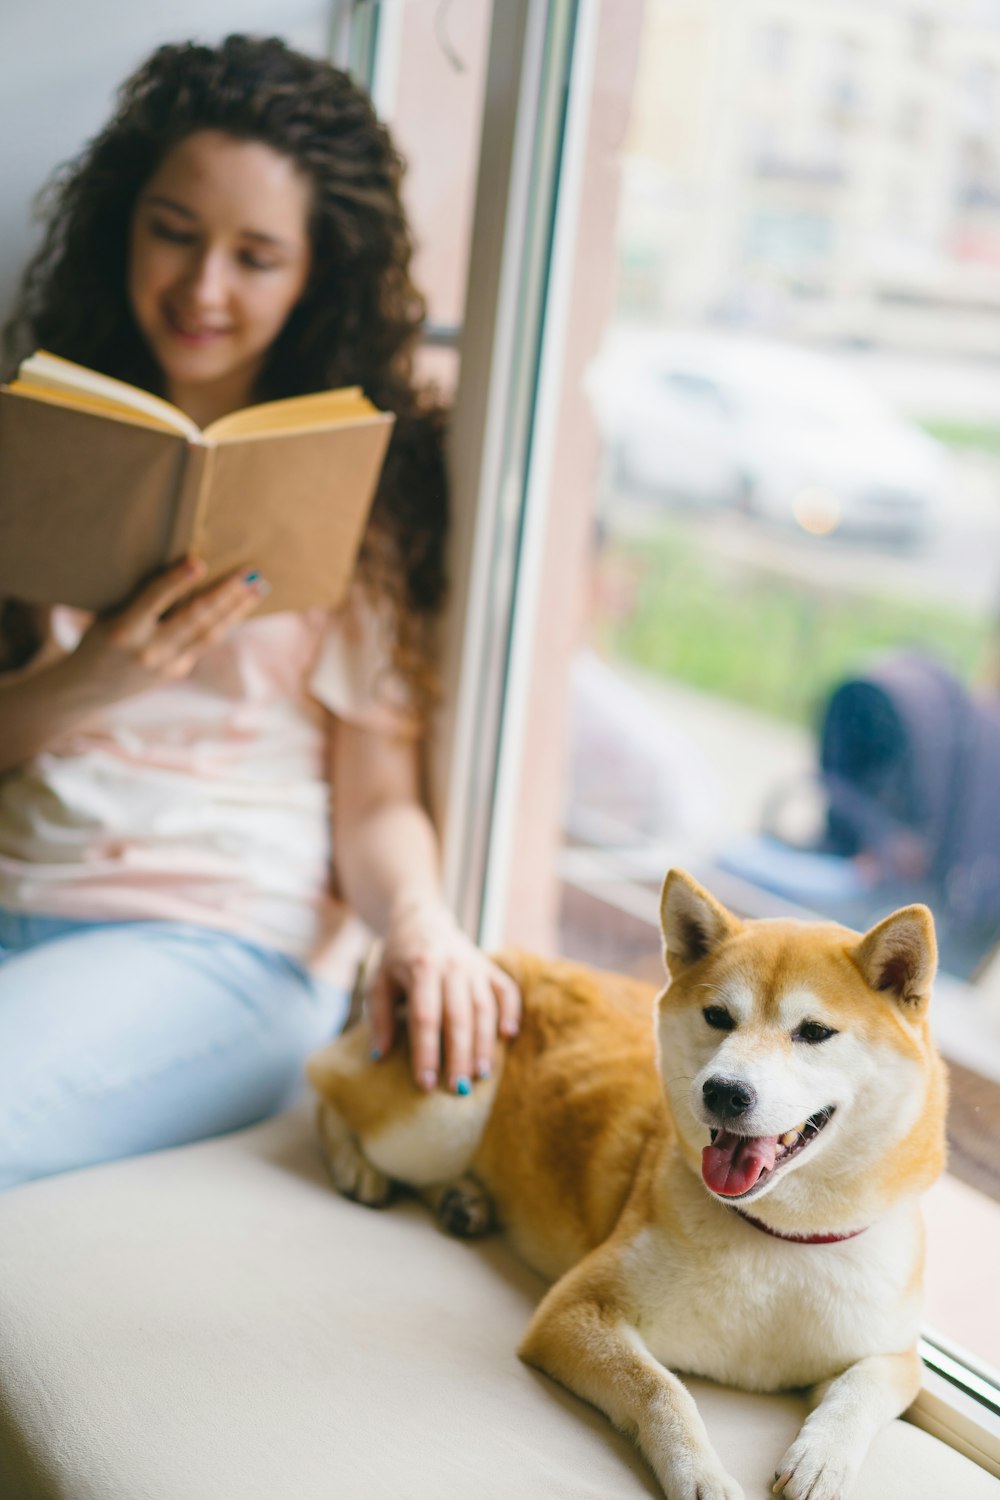 소파에 누워 있는 개에게 책을 읽어주는 여자